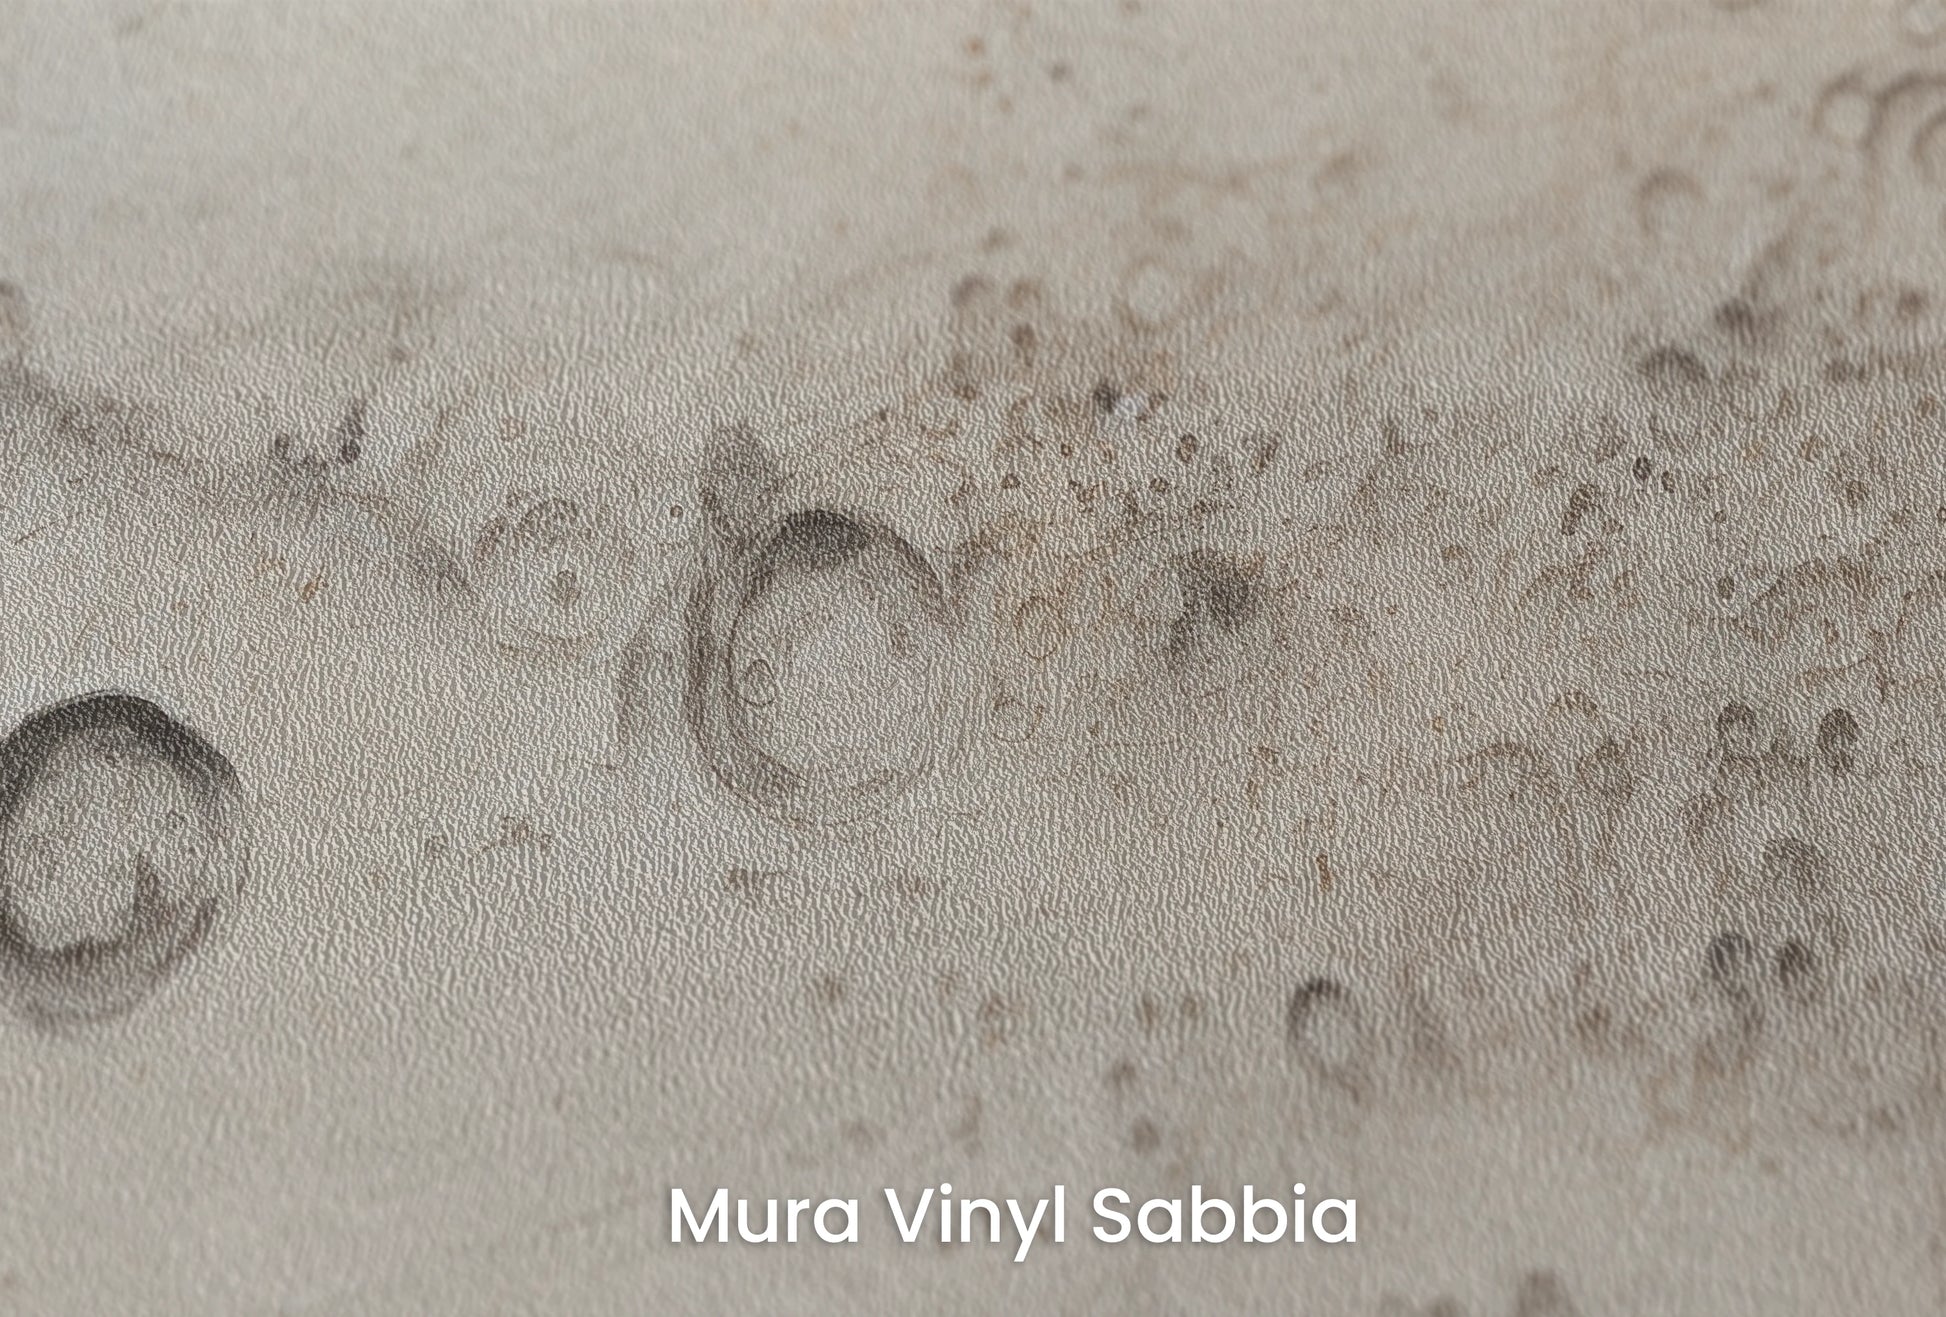 Zbliżenie na artystyczną fototapetę o nazwie Jupiter's Swirl na podłożu Mura Vinyl Sabbia struktura grubego ziarna piasku.